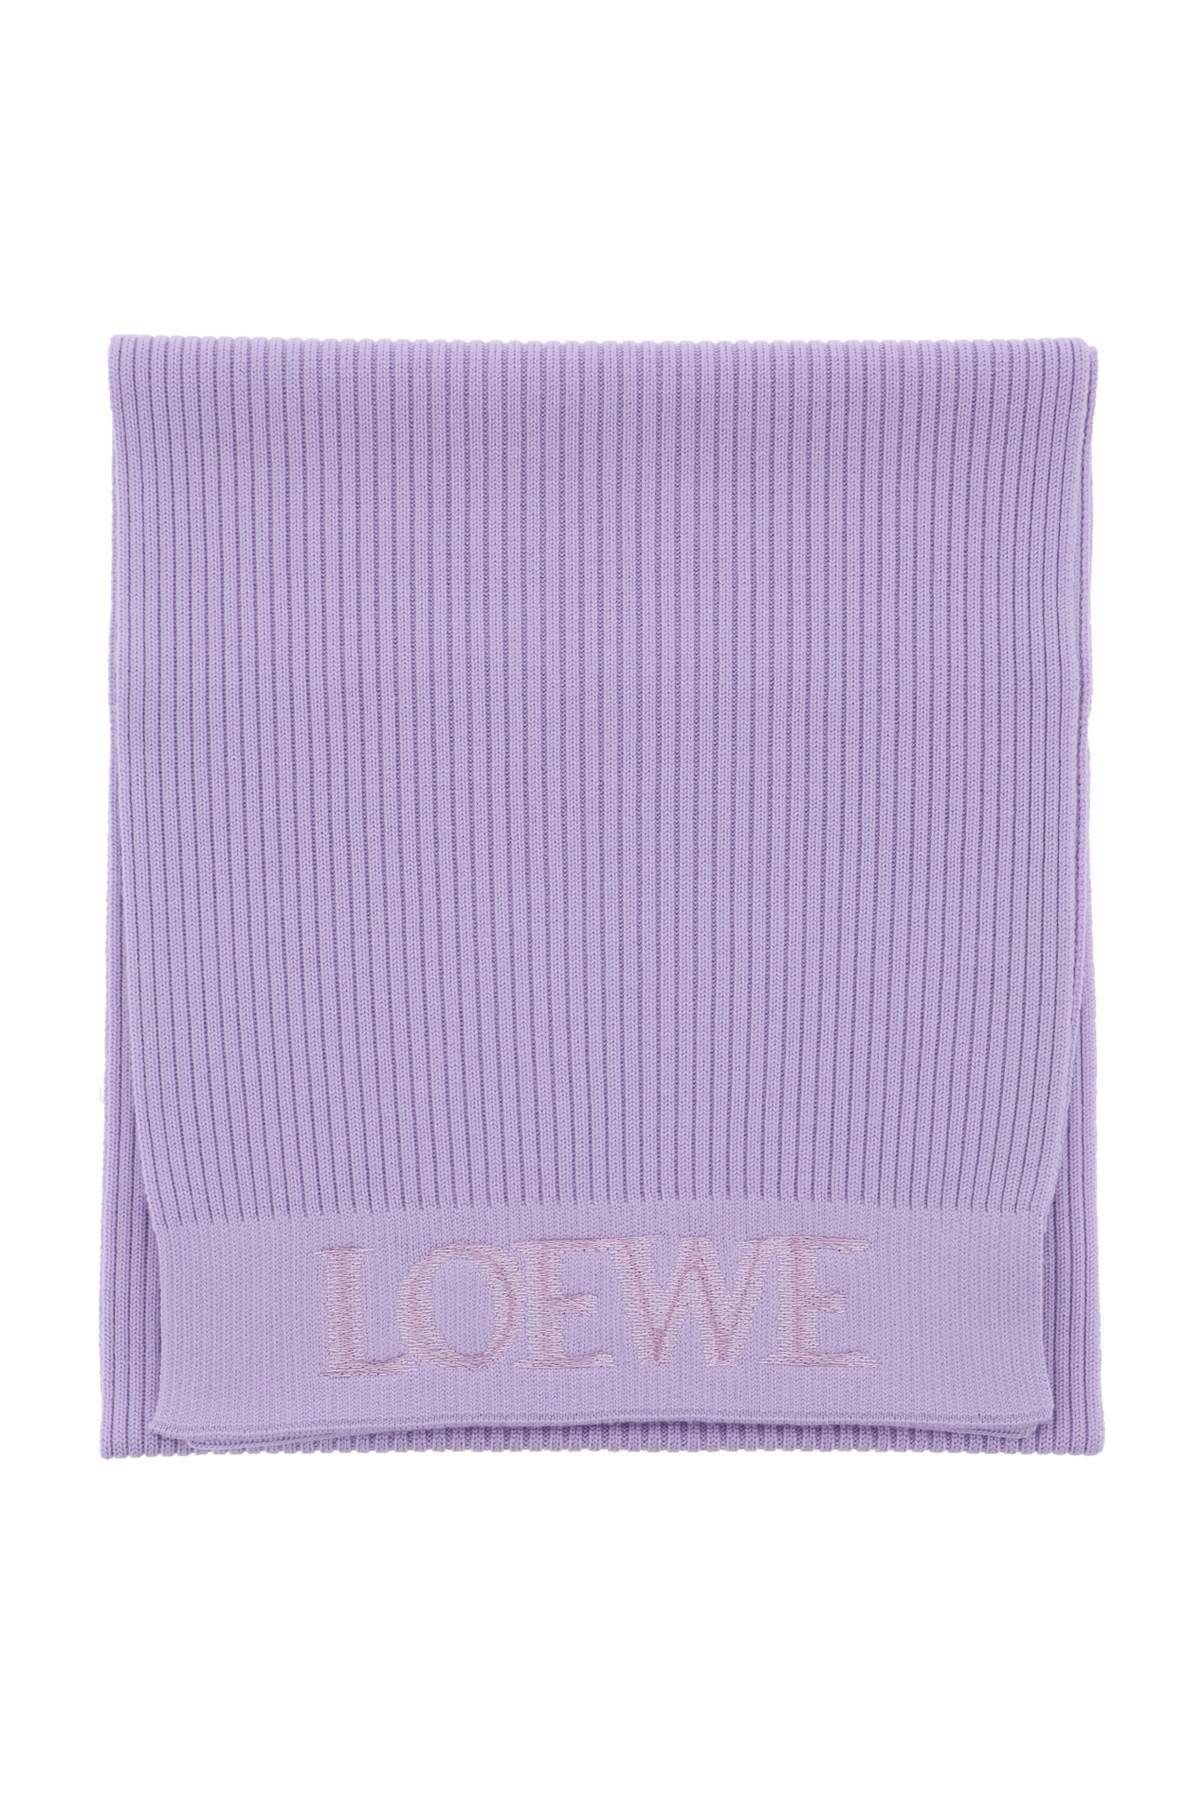 Loewe LOEWE wool scarf